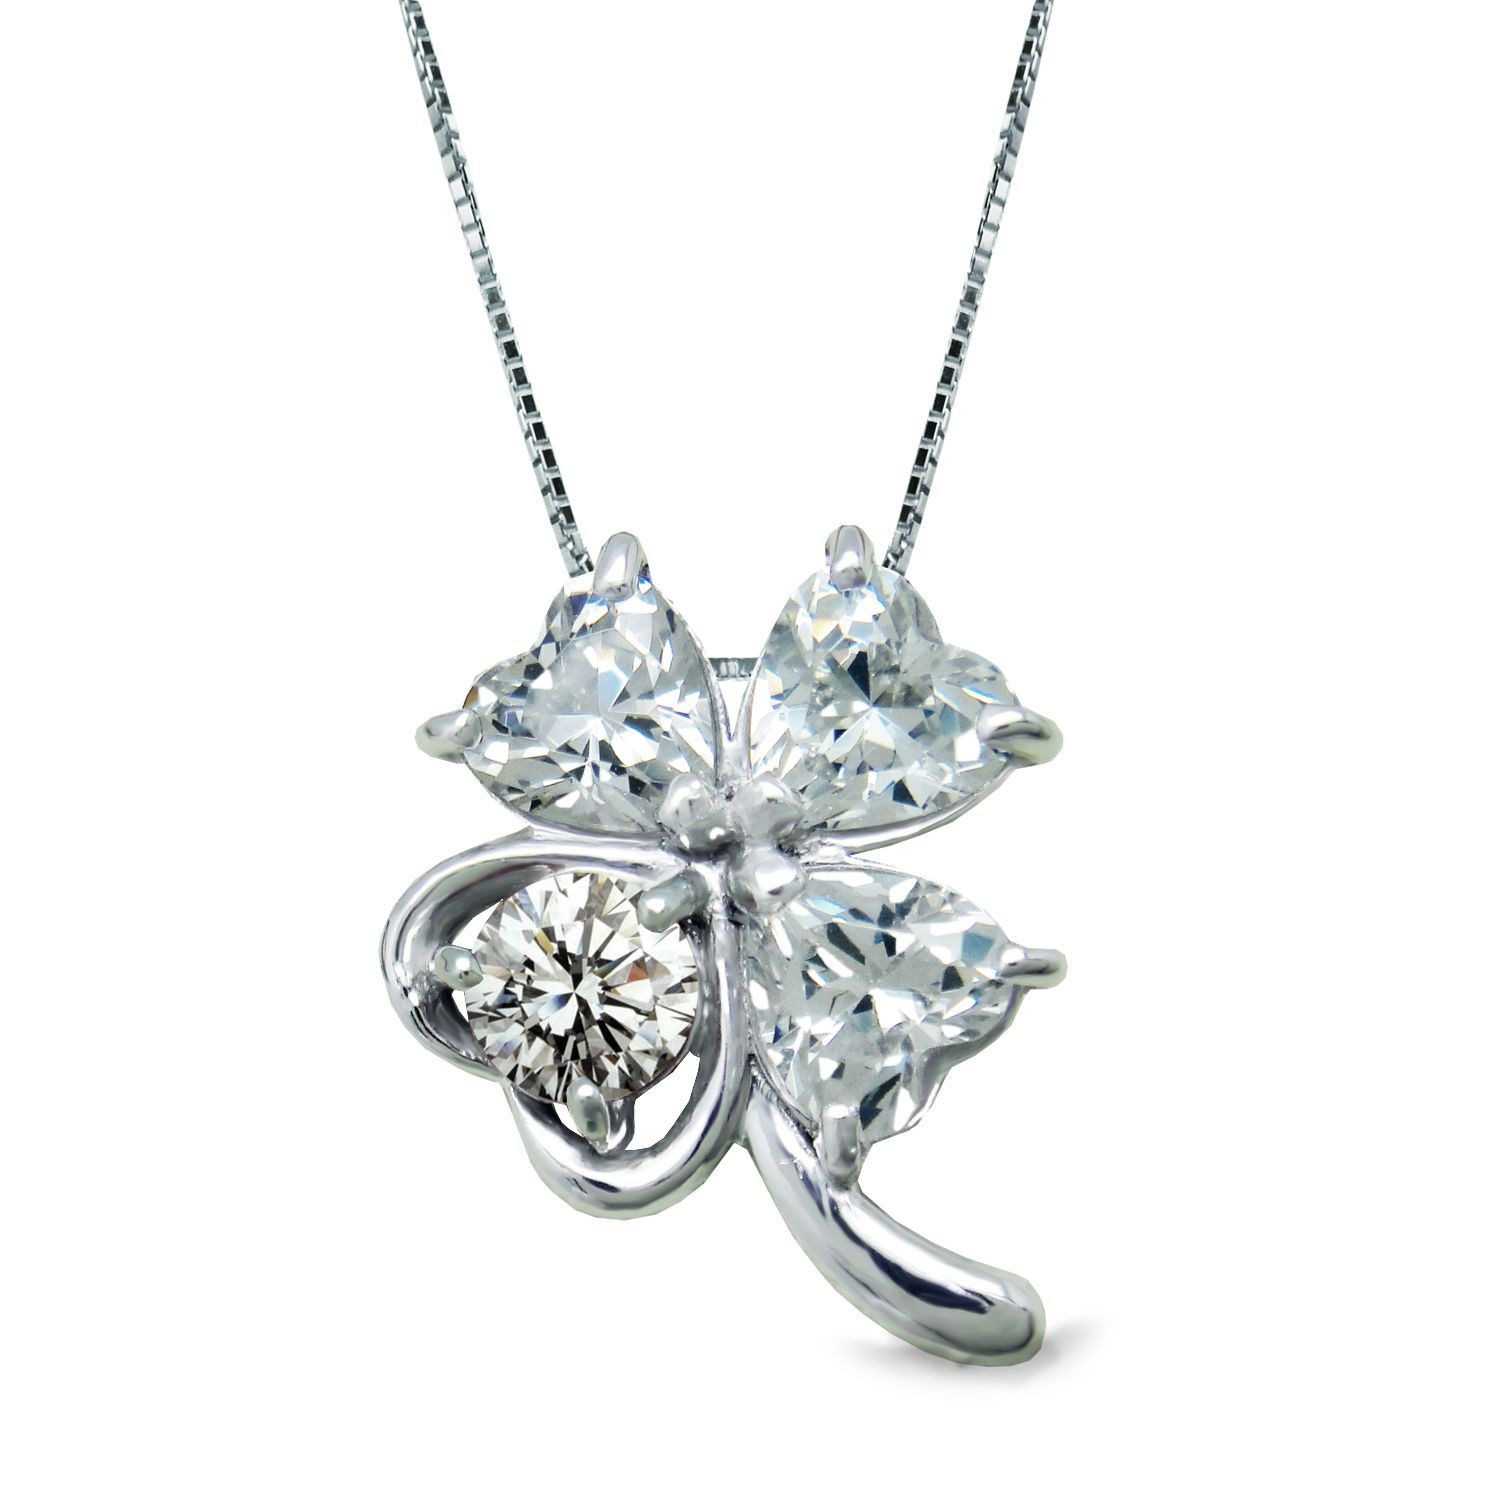 4月 誕生石 ダイヤモンド 幸運呼び込む 四ツ葉 クローバー K10 ホワイトゴールド ネックレス 美輪宝石 ※製作納期約4週間